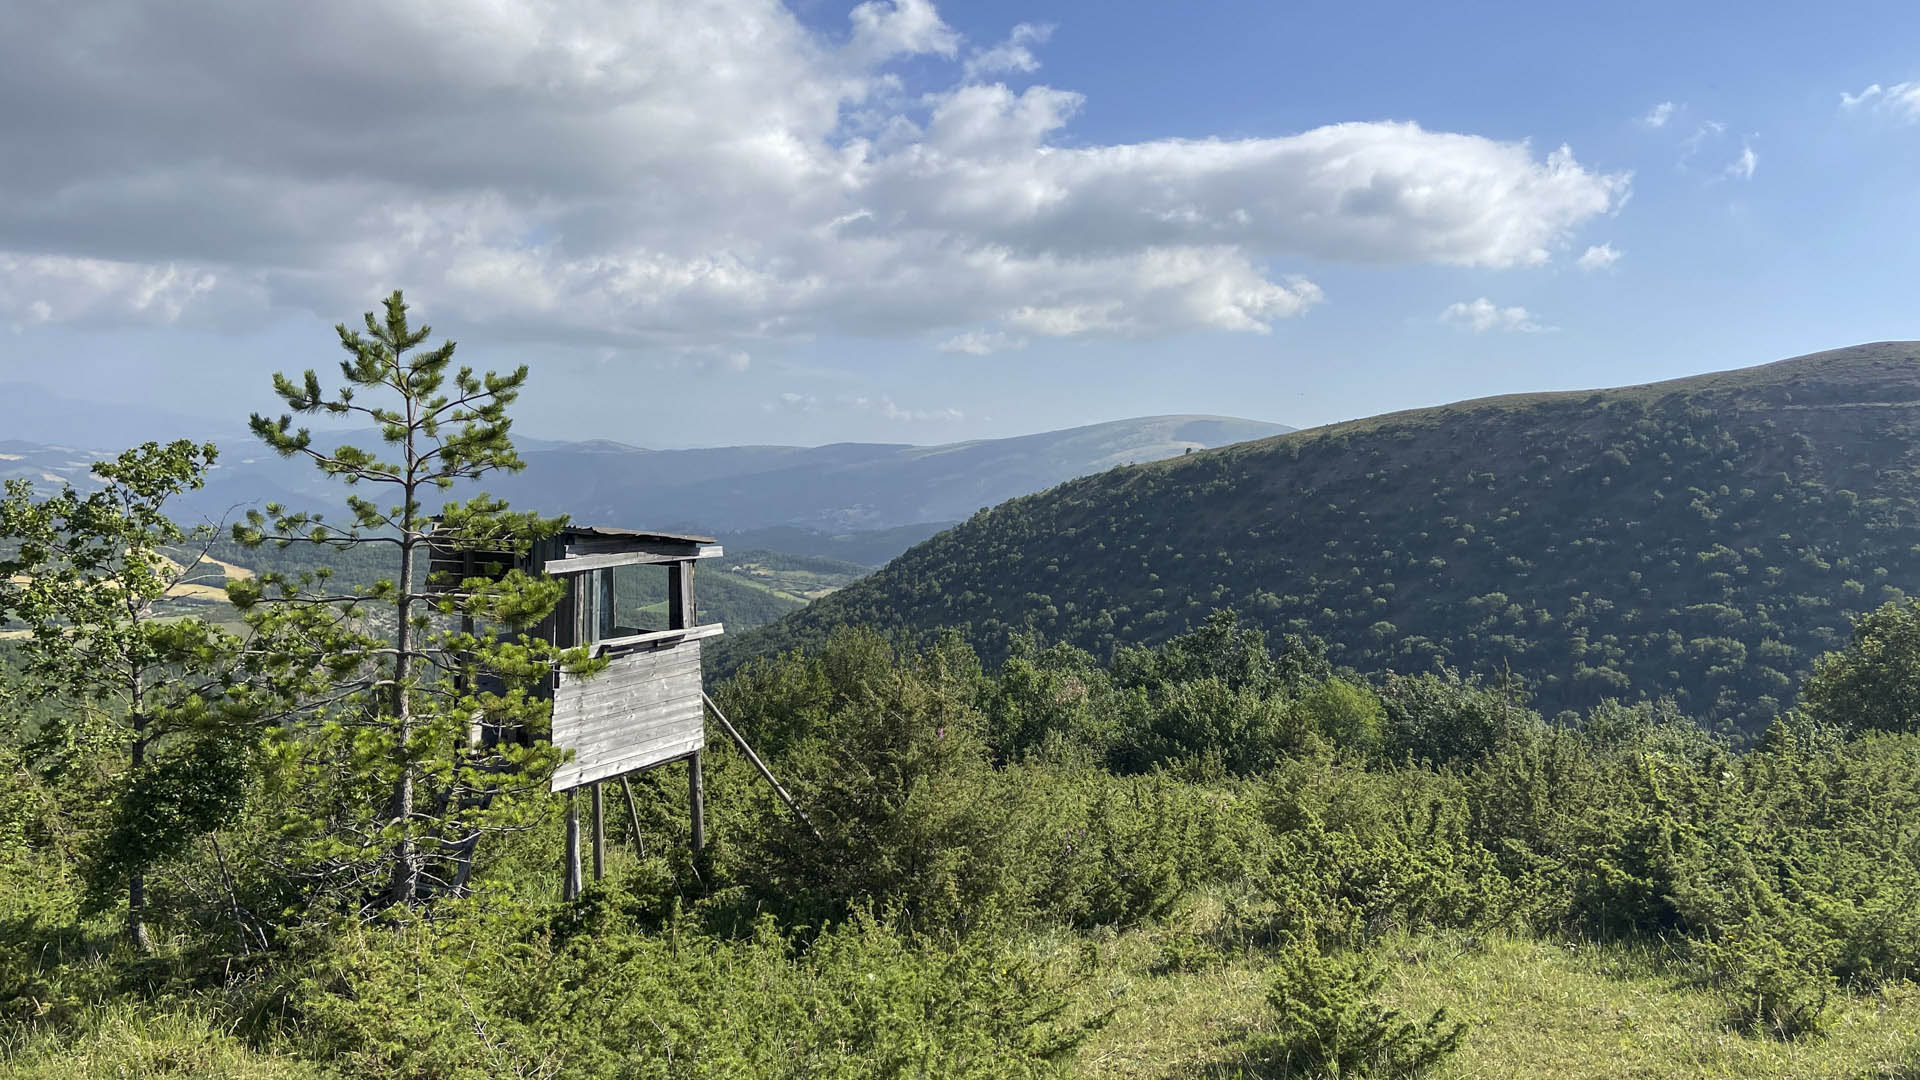 L'azienda Valle di Fiordimonte  un magnete per quanto riguarda la caccia nell'Italia centrale. Situata al confine con i Monti Sibillini, si estende su un territorio aperto, in un susseguirsi di rilievi anche aspri e ampie valli, boschi e coltivi